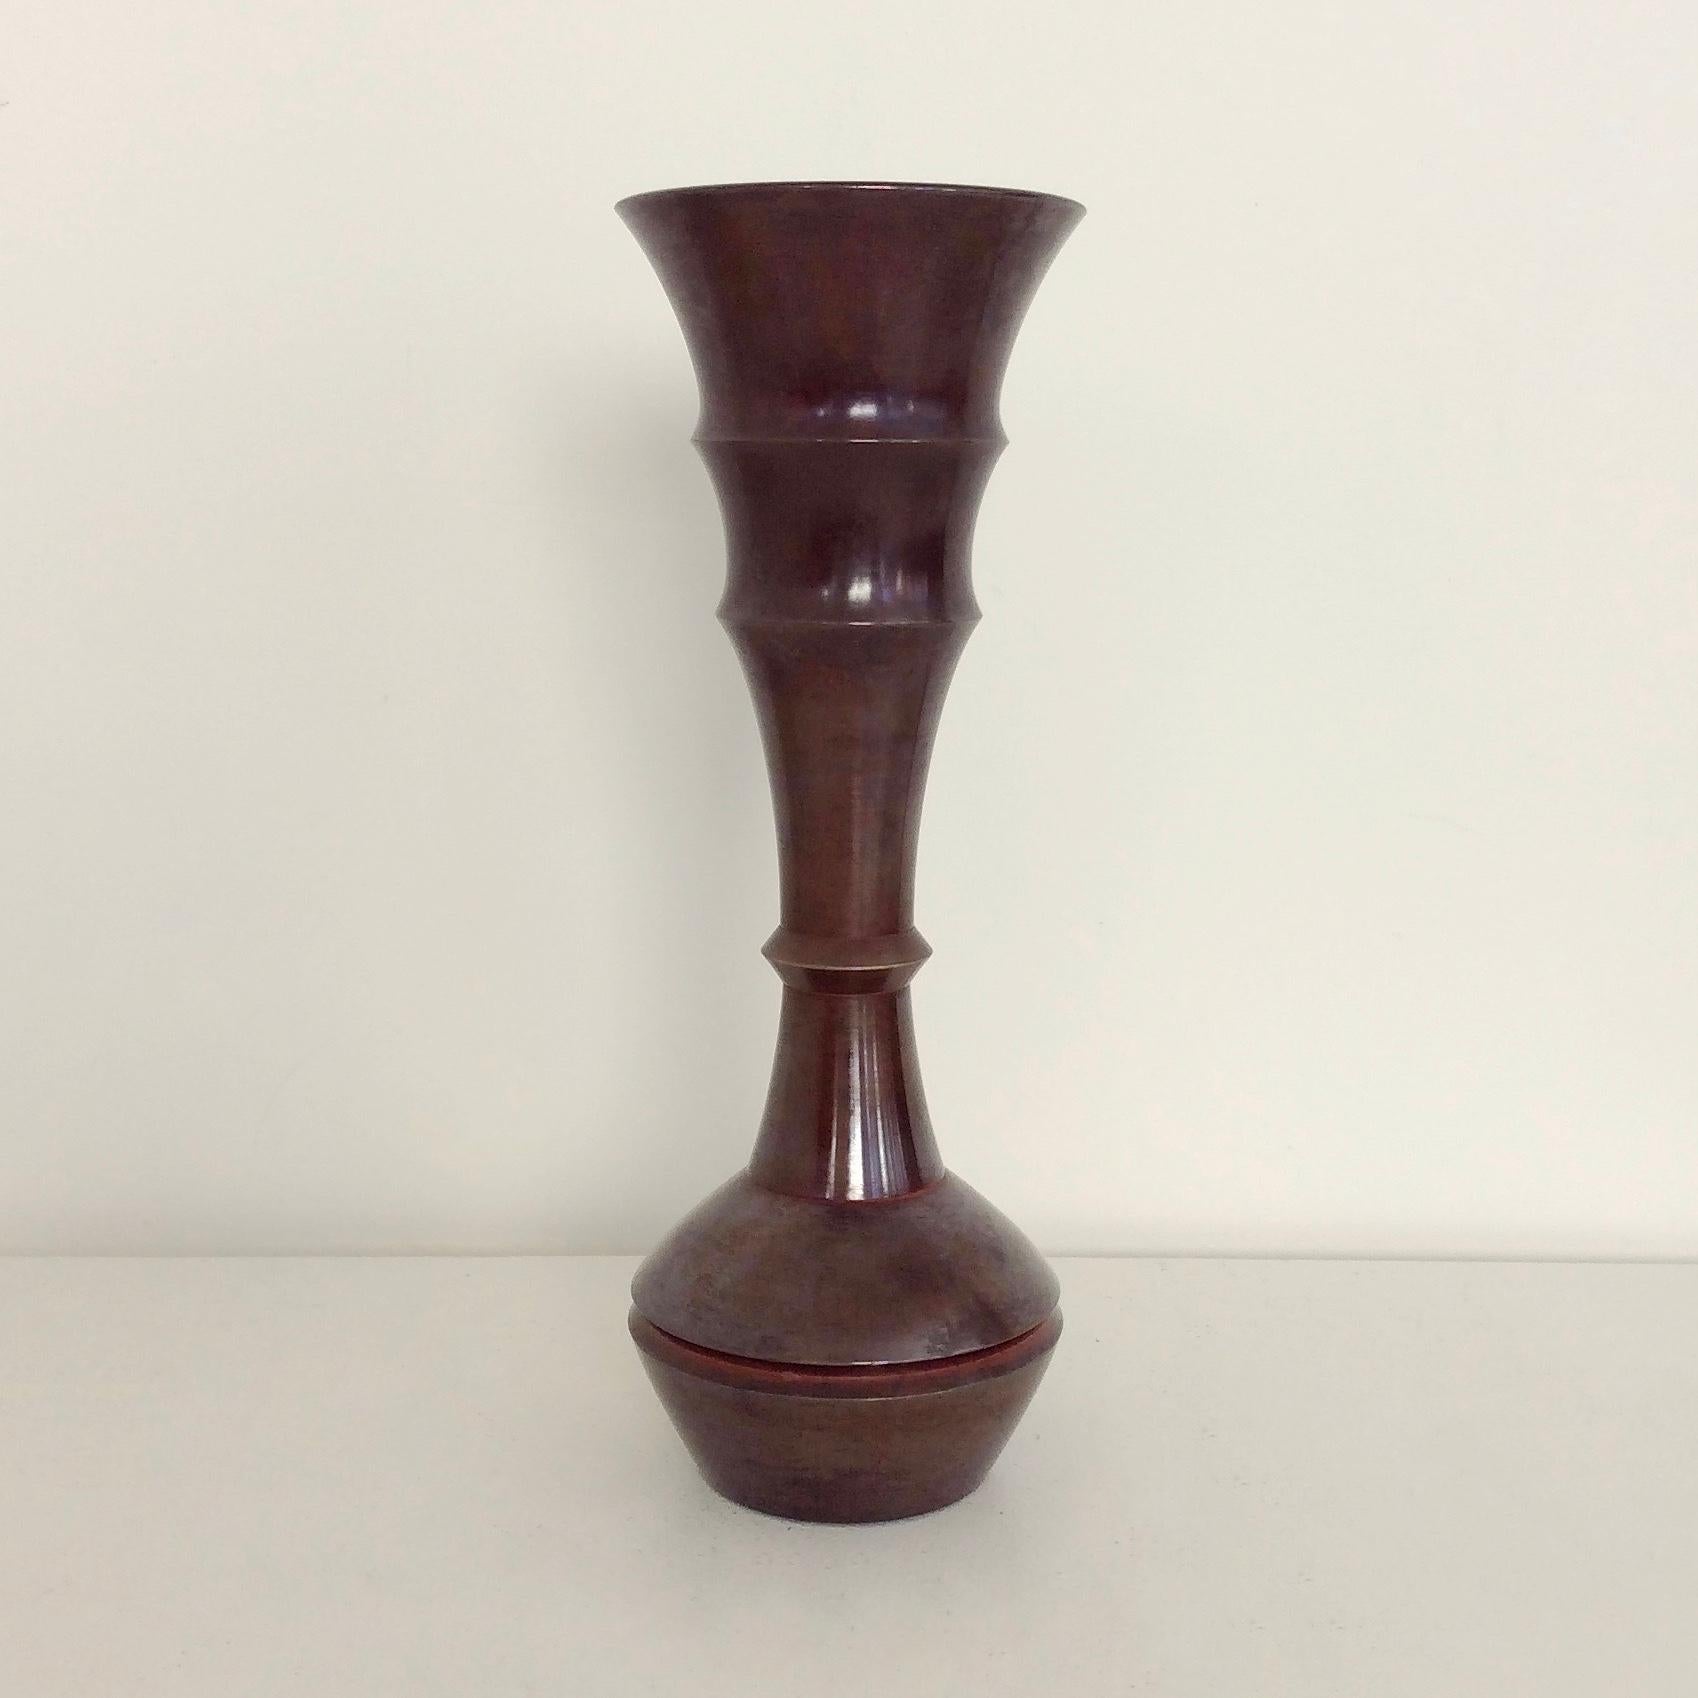 Yasumi Nakajima II (1906-1988) Ikebana-Vase, um 1960, Japan.
Trompetenform, Modell Tomoe, mit schön patinierter braun-roter (Seido) Bronze.
Darunter unterschrieben.
Abmessungen: 26 cm H, 9 cm Durchmesser.
Originaler guter Zustand.
Alle Käufe sind